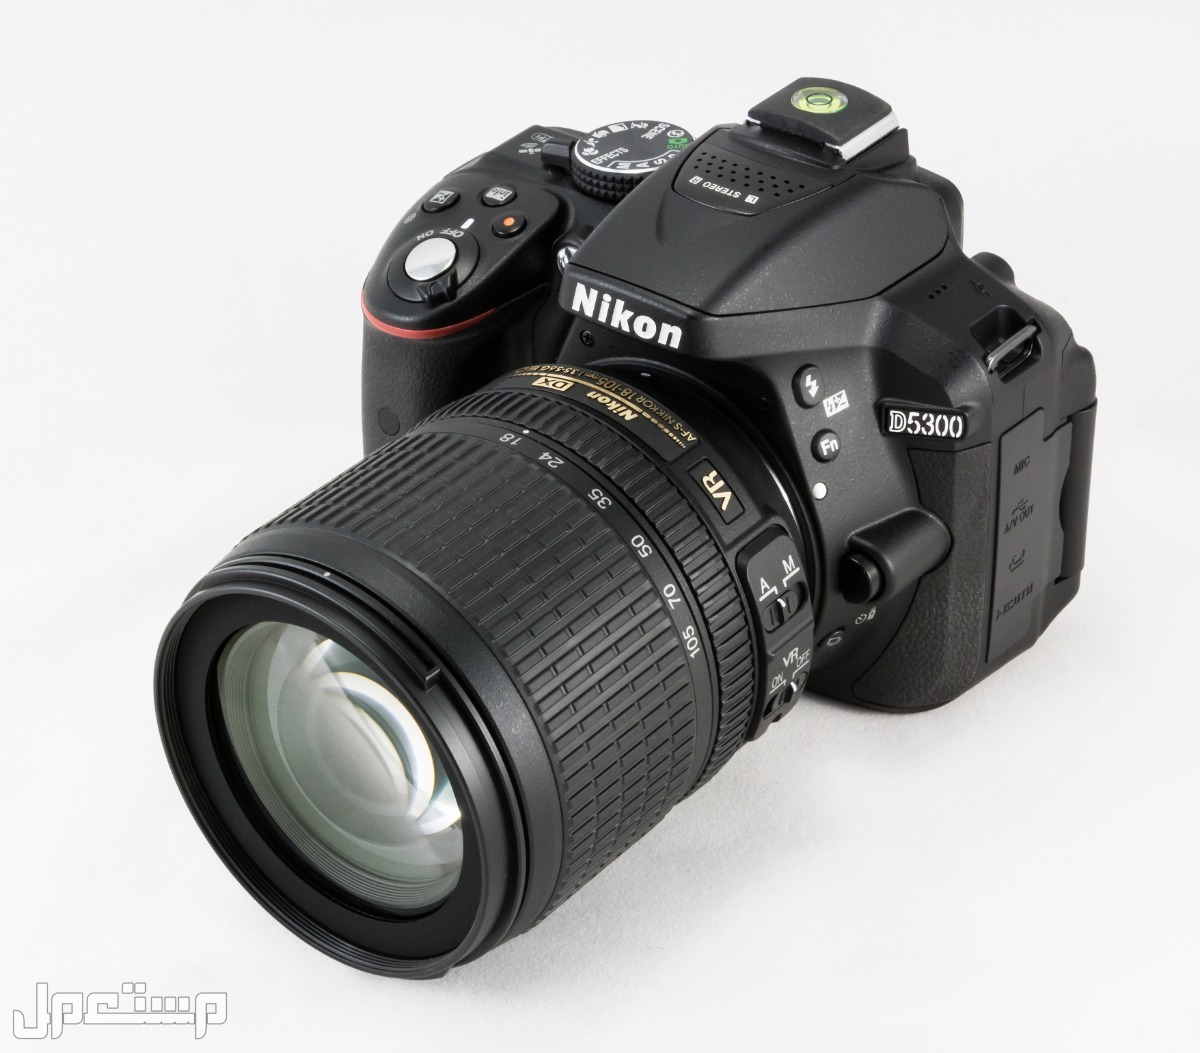 مواصفات ومميزات وأسعار أفضل أنواع كاميرات نيكون للمحترفين في موريتانيا كاميرا Nikon D5300